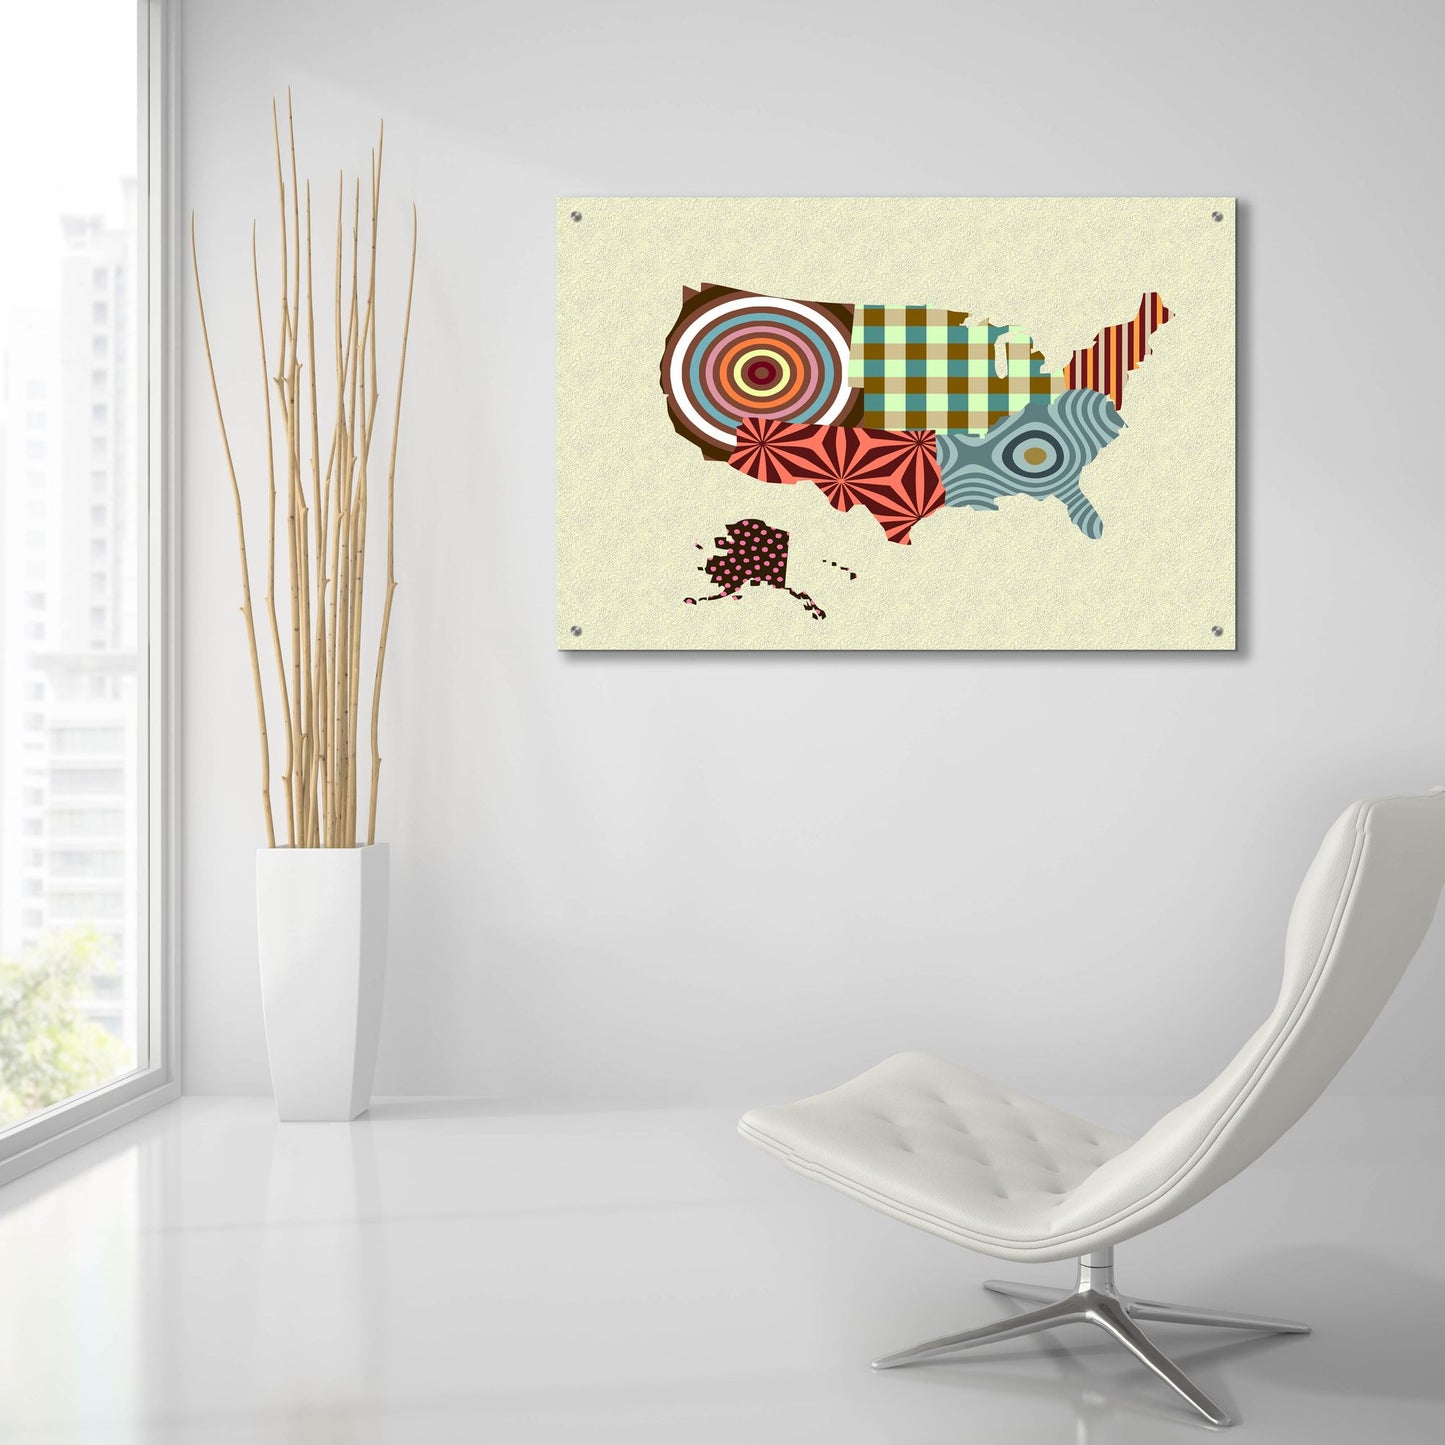 Epic Art 'USA Map' by Lanre Adefioye, Acrylic Glass Wall Art,36x24